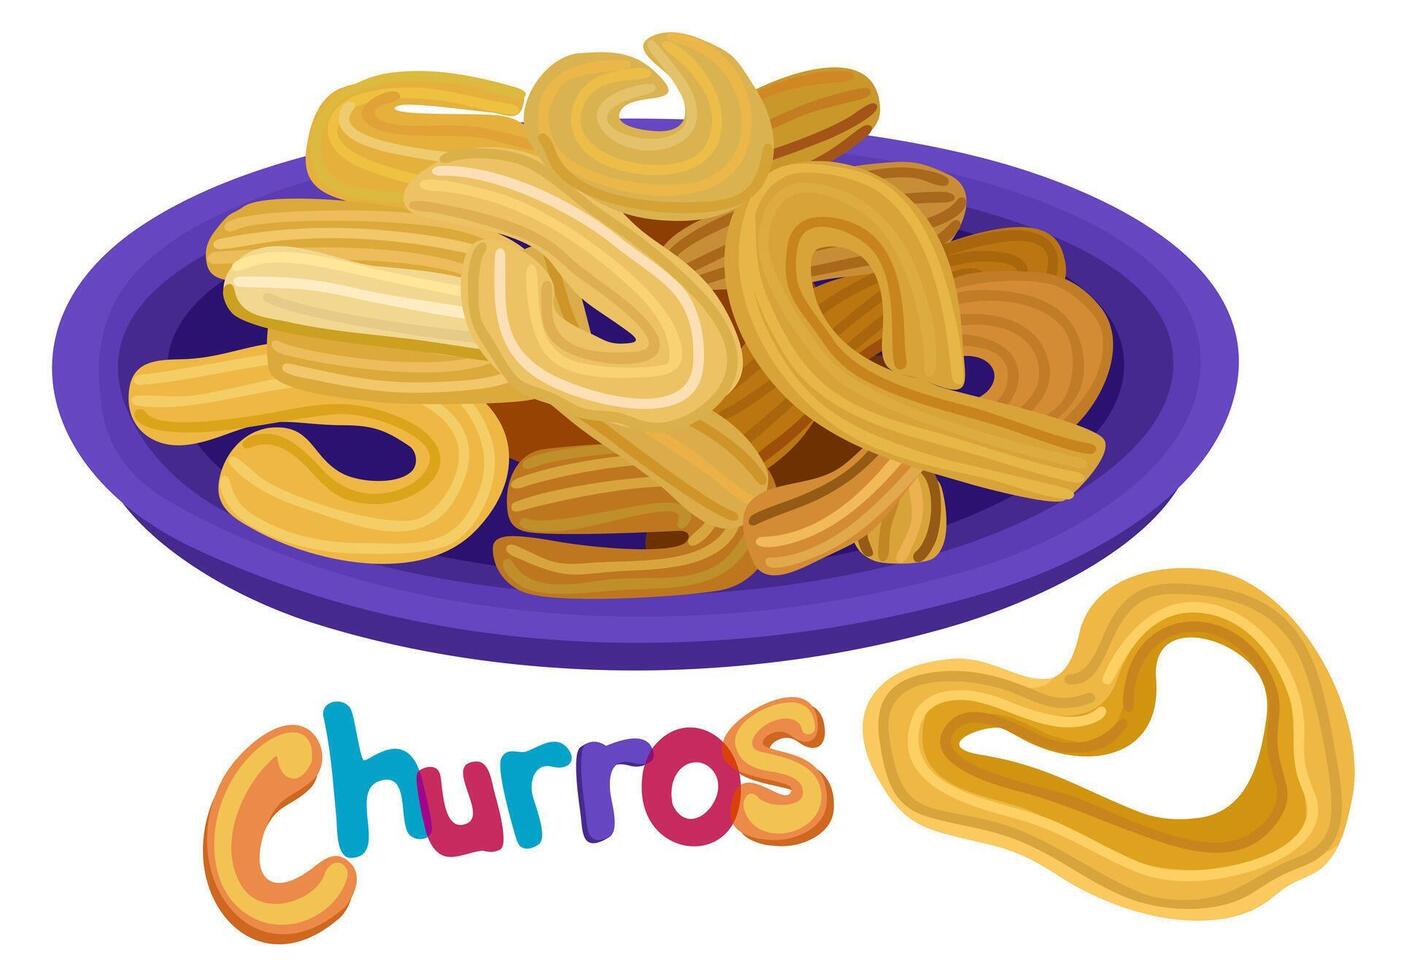 churros eras på tallrik. spanska traditionell ljuv mellanmål. isolerat illustration med text vektor